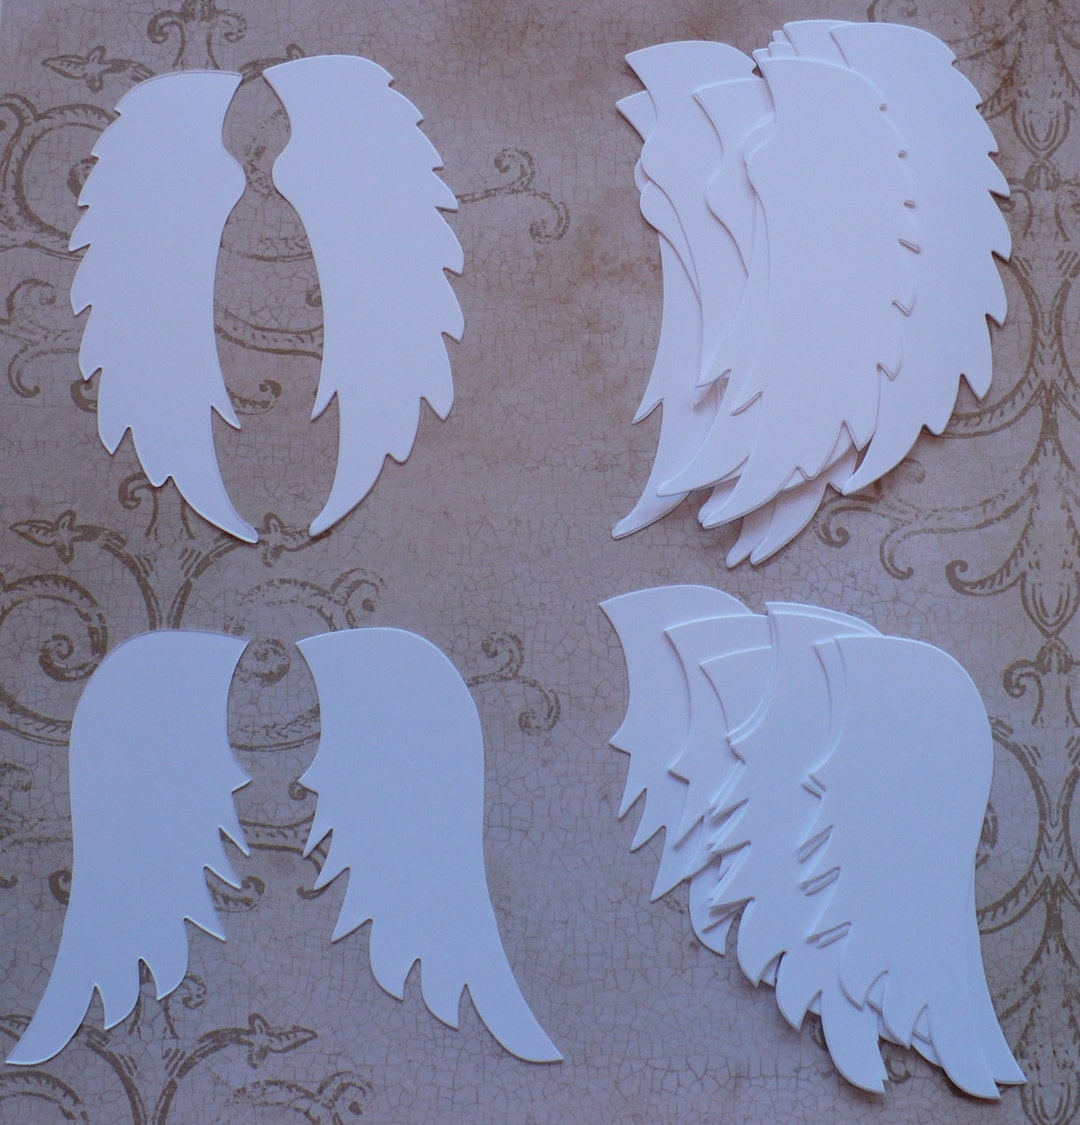 Paper Angel Wings - Embossed White Die Cut Dresden Paper Wings, 4 Pcs.